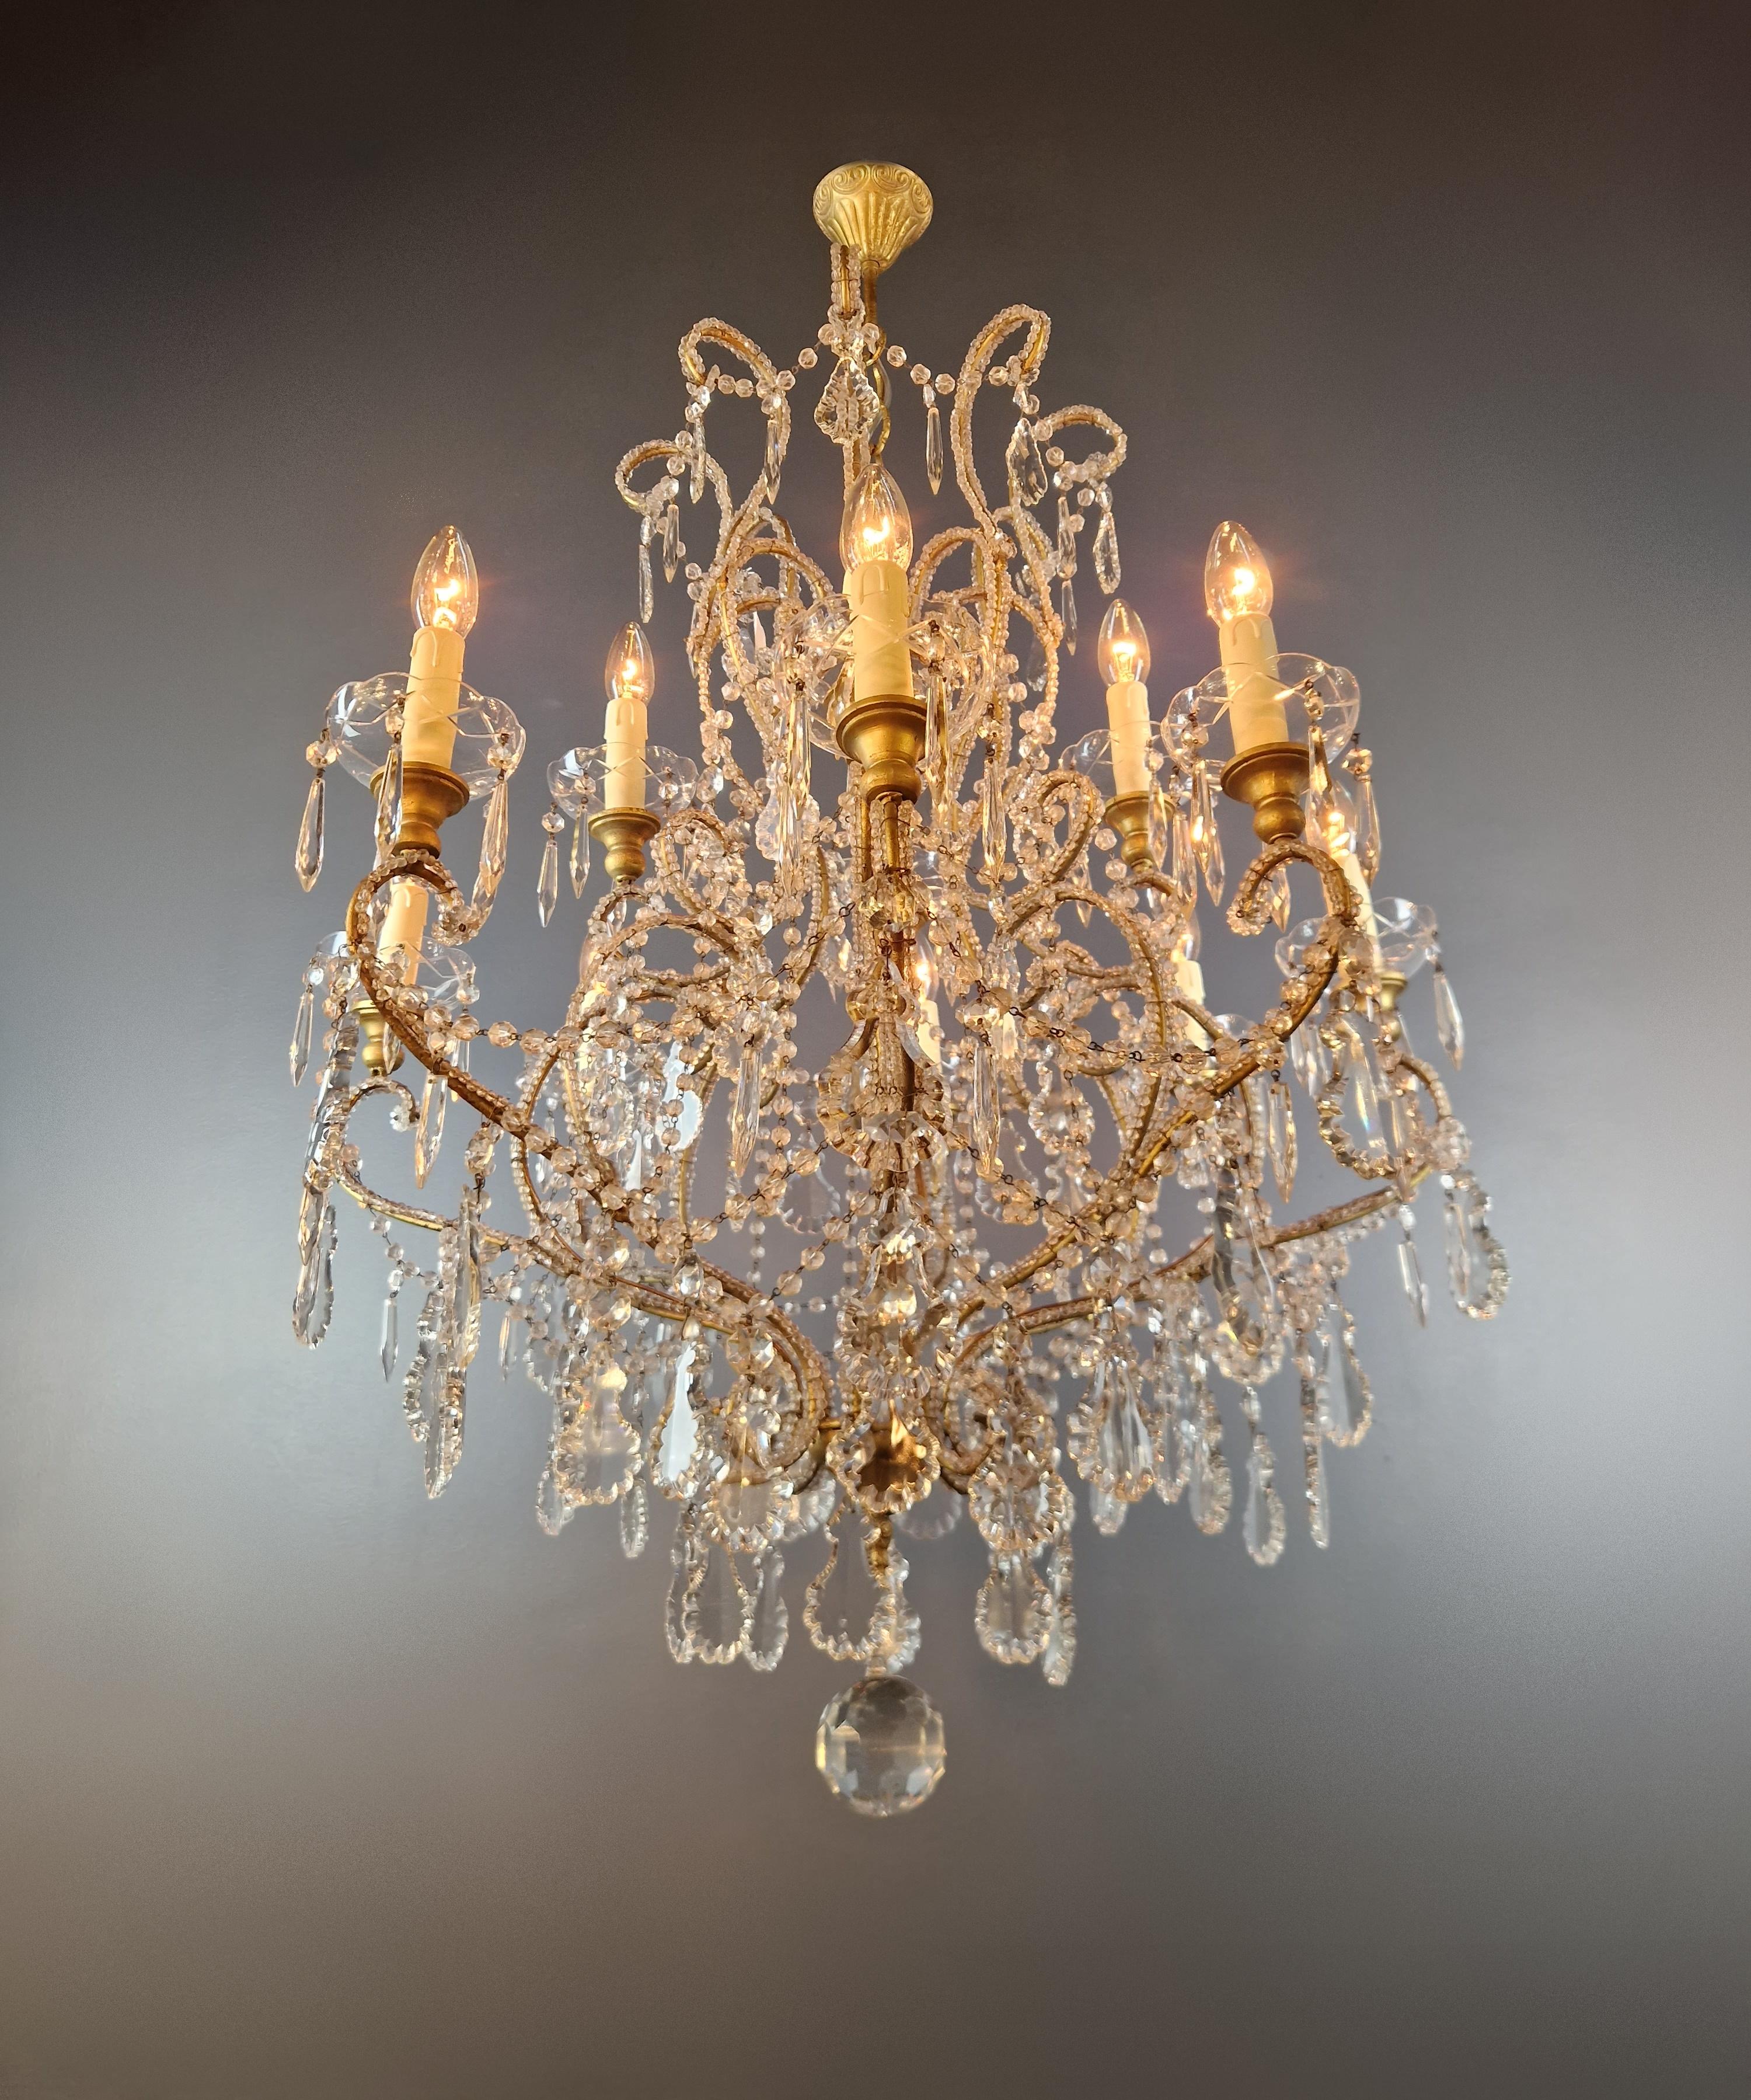 Brass Crystal Chandelier Antique Ceiling Lamp Lustre Art Nouveau Lamp For Sale 1